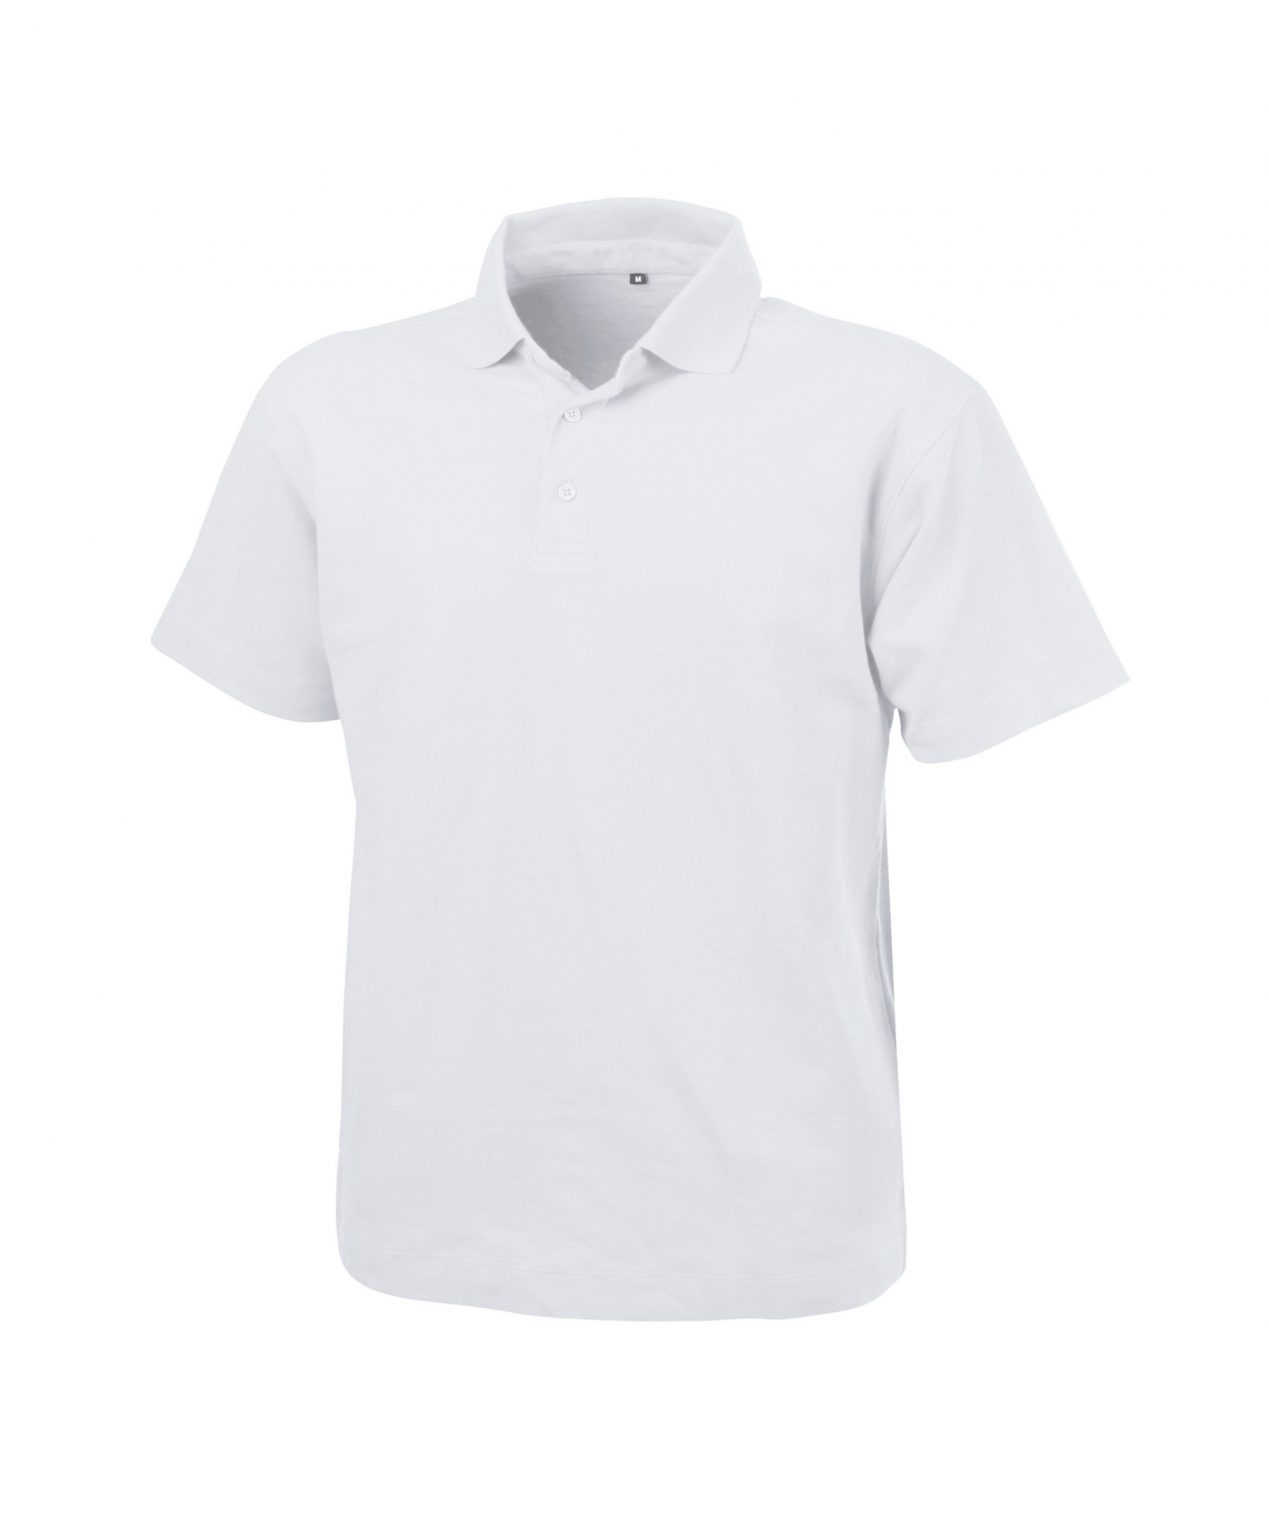 leon polo shirt white front